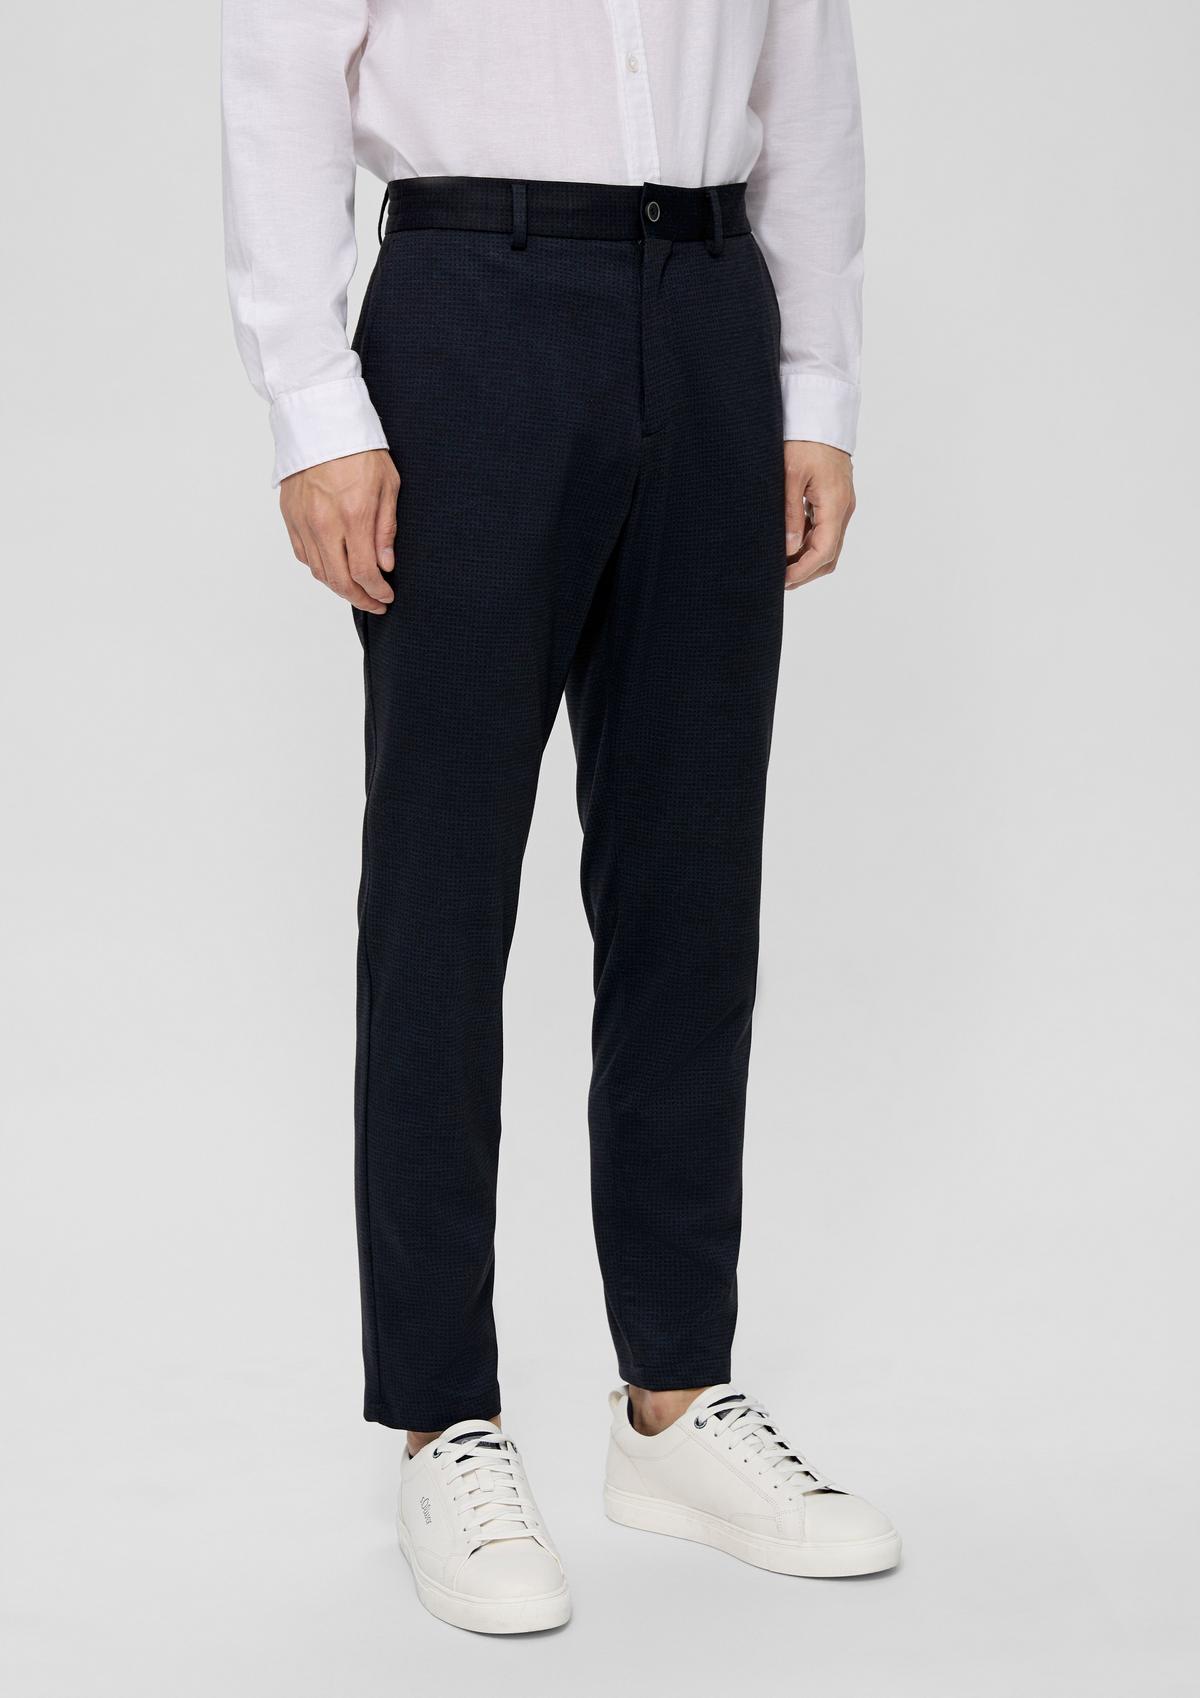 s.Oliver Slim: geruite jogg suit broek